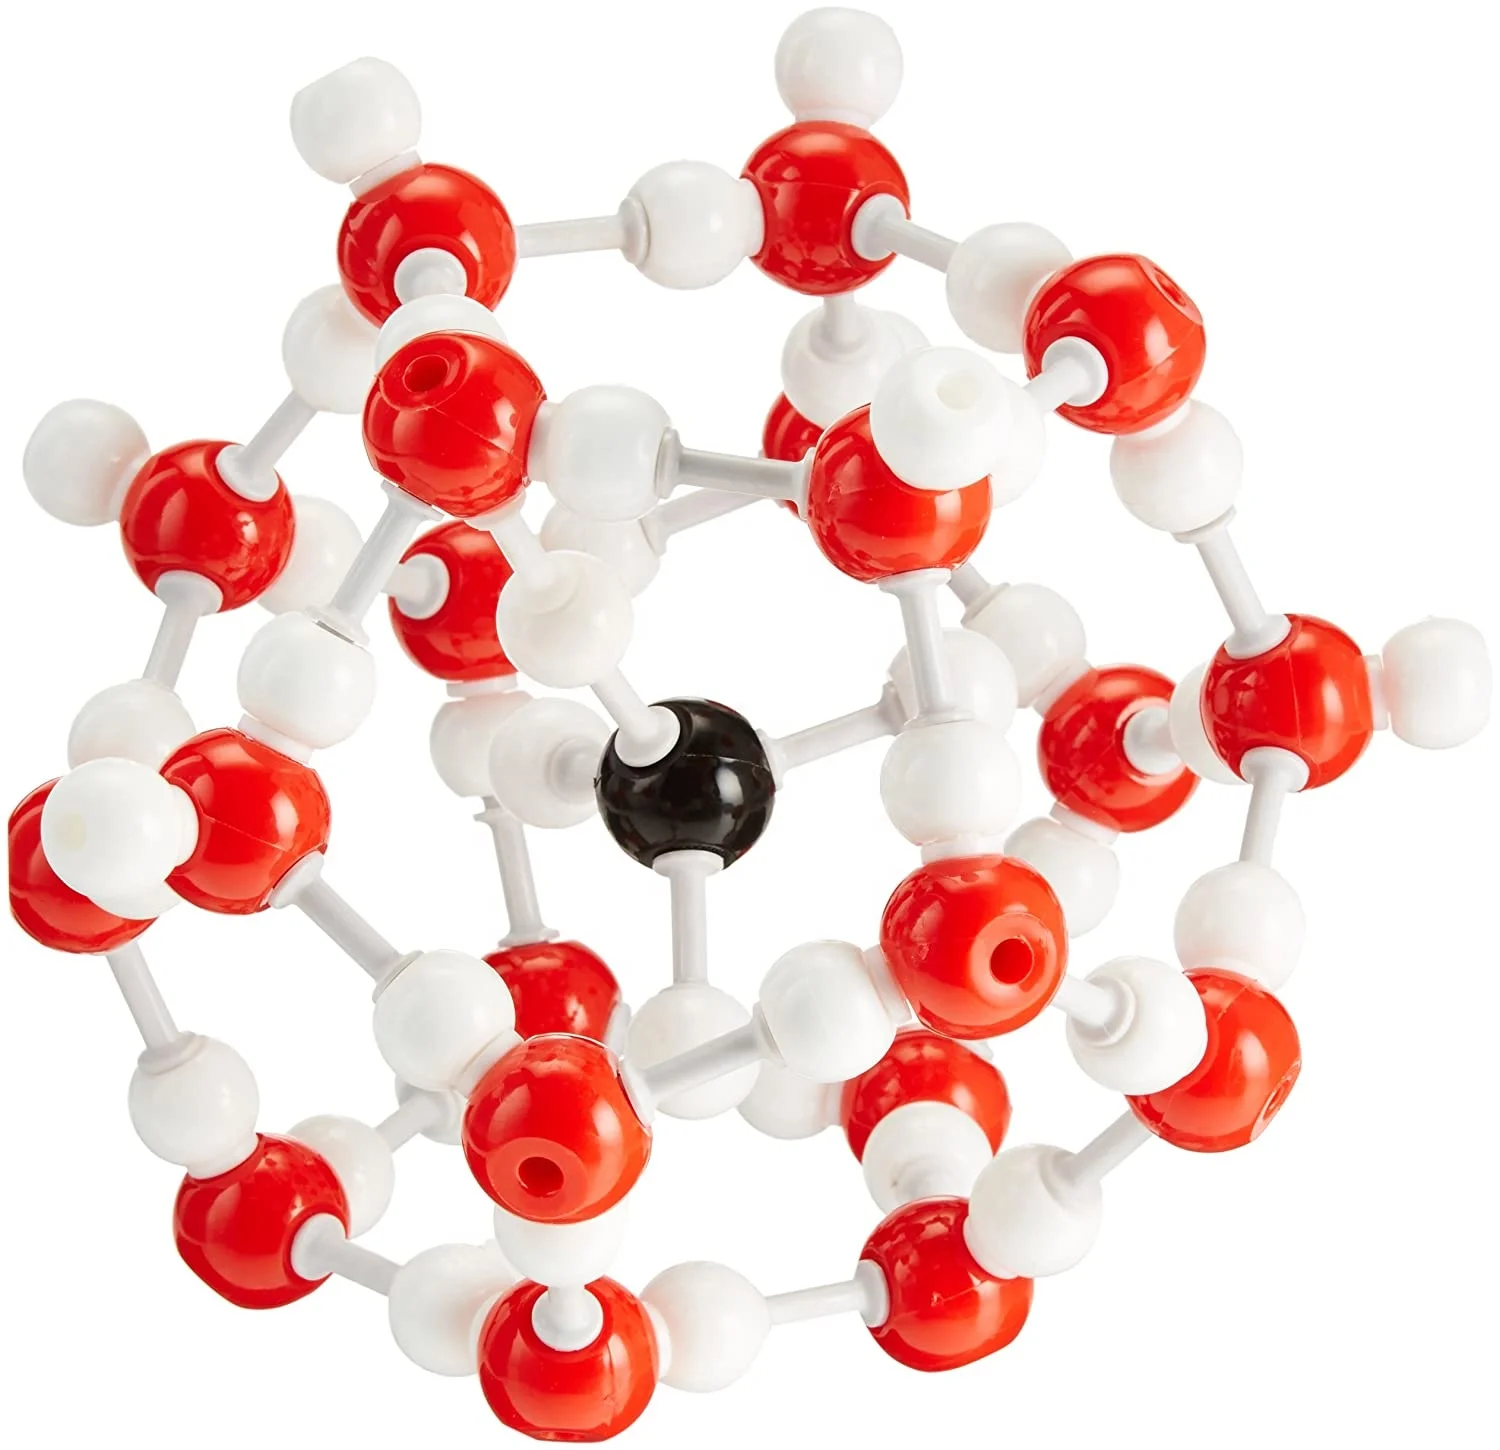 Modelos De Estructura Molecular De Hidratos De Etano,Clatrato - Buy  Estructura De La Molécula Modelo,Química Modelo,Hidrato De Metano Clatrato  Product on 